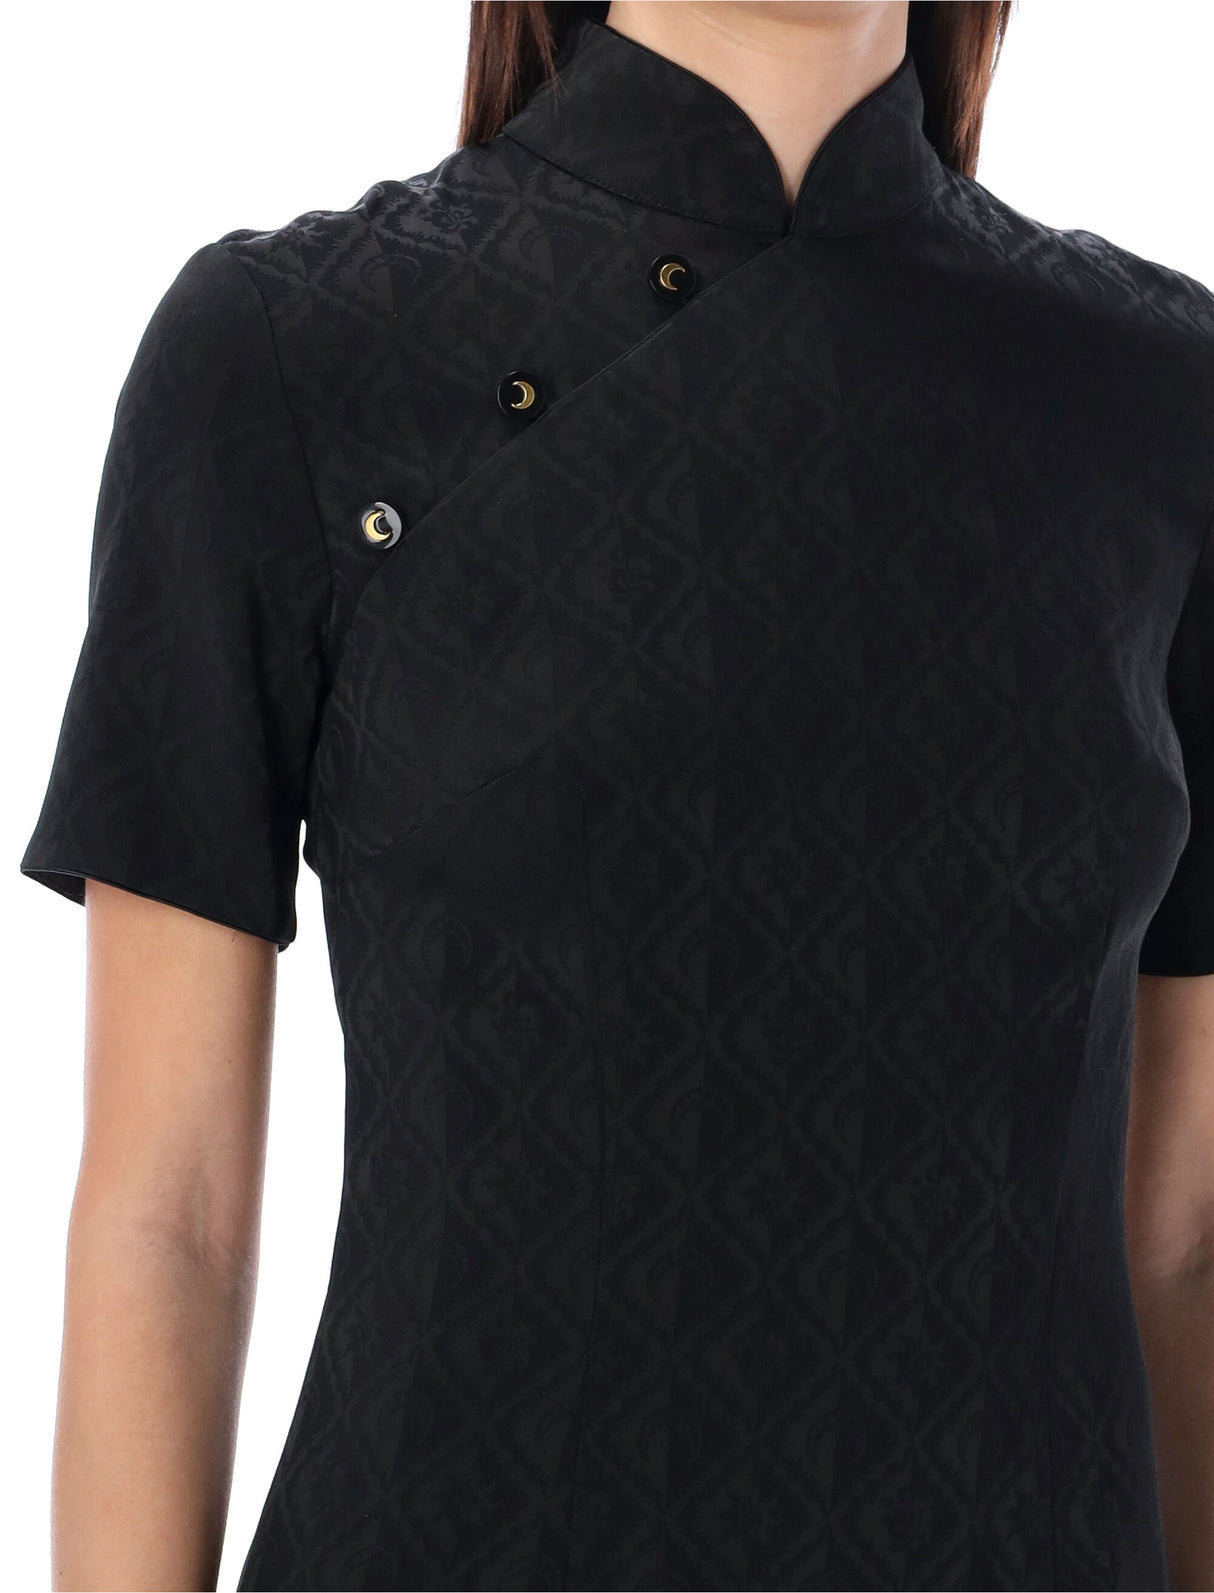 فستان قصير من قماش الفسكوز بتصميم بغرزة جاكارد للنساء في اللون الأسود